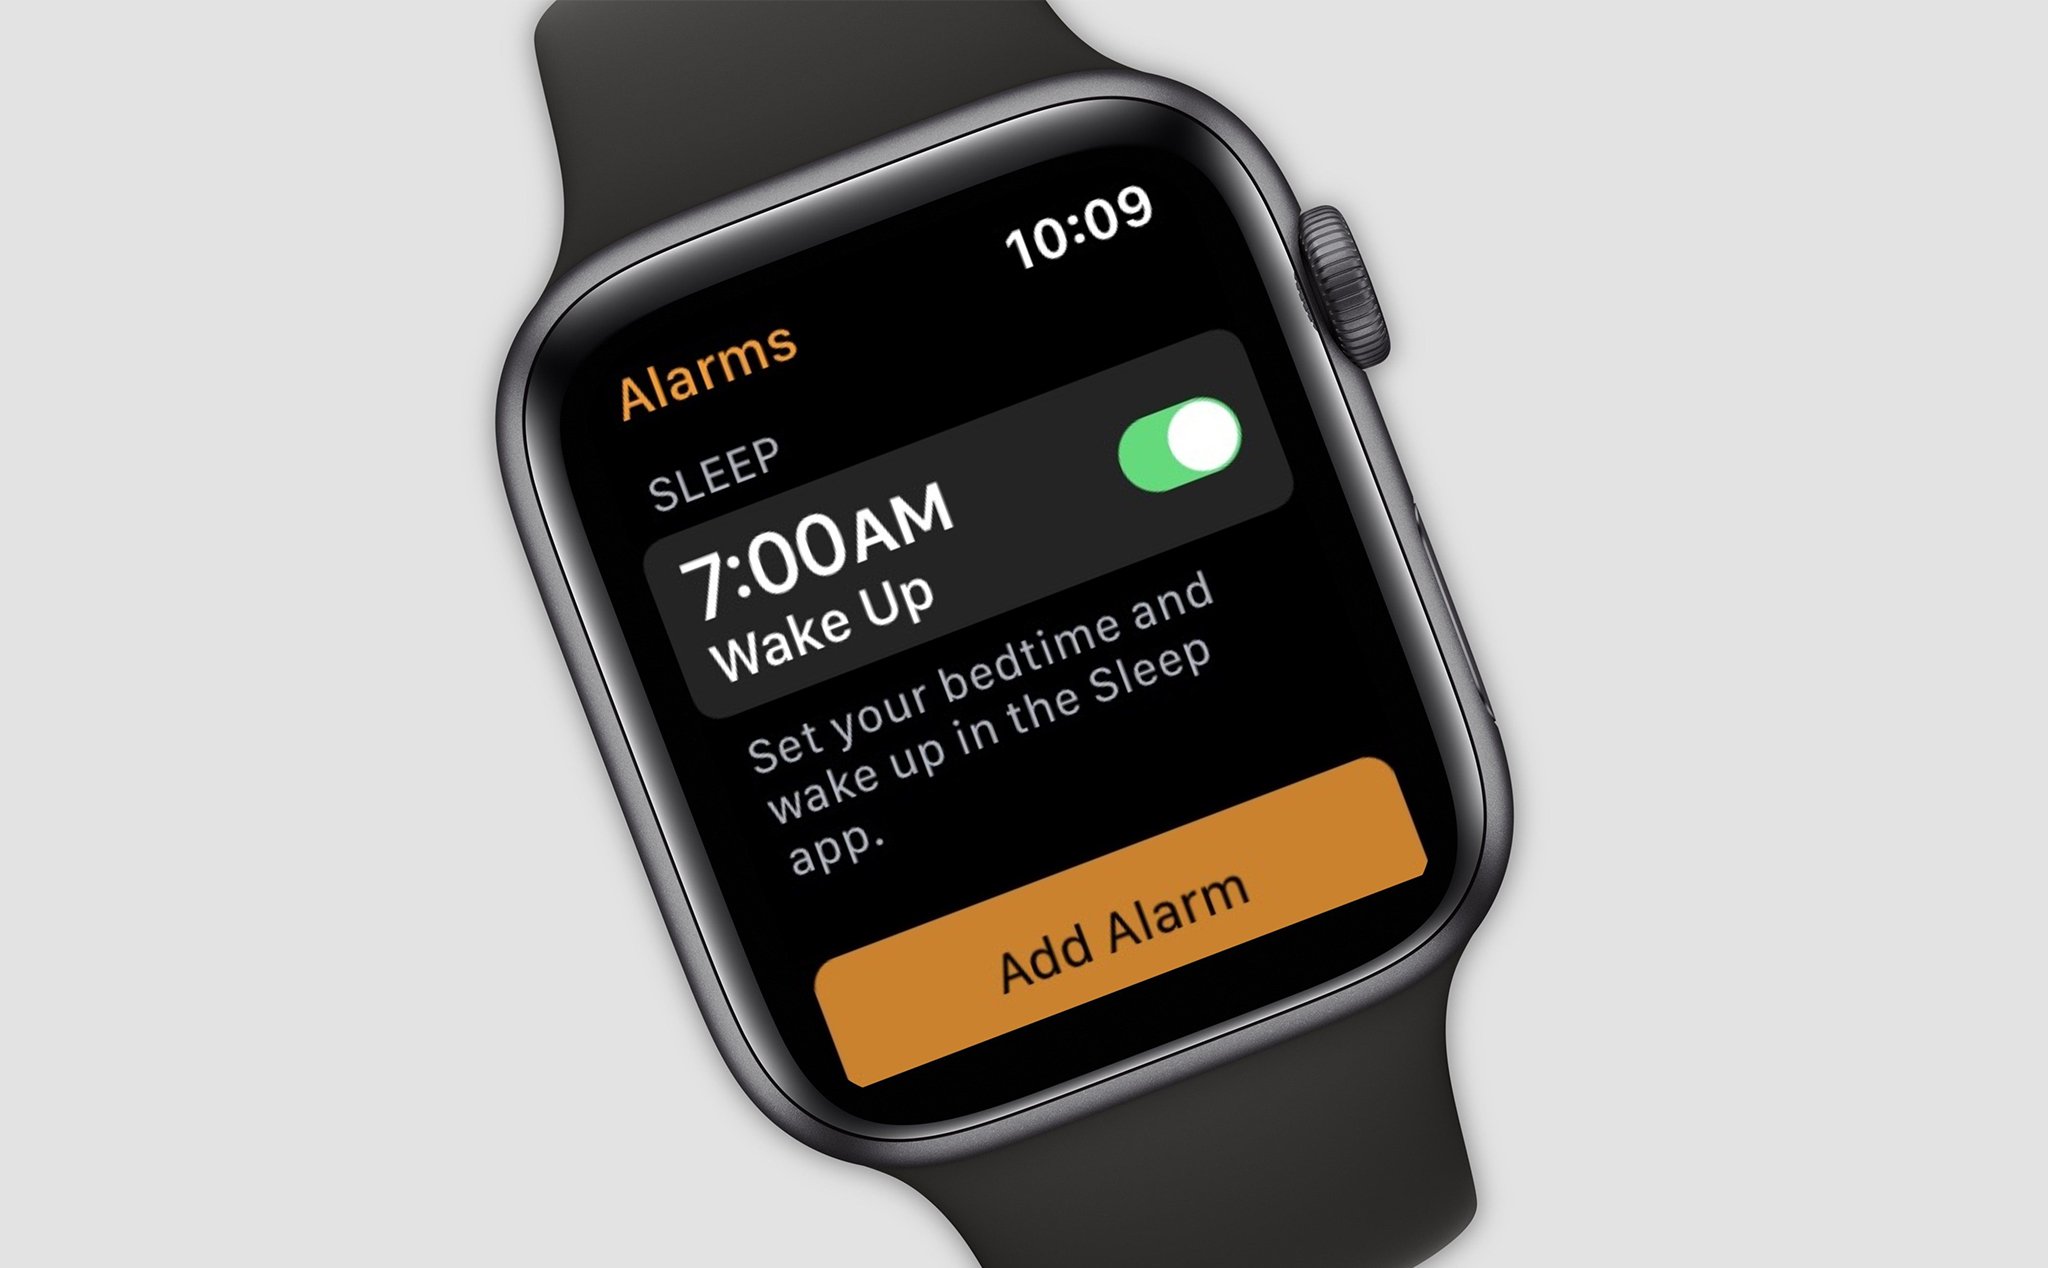 Đây là giao diện báo thức trên Apple Watch có nhắc đến ứng dụng giấc ngủ?